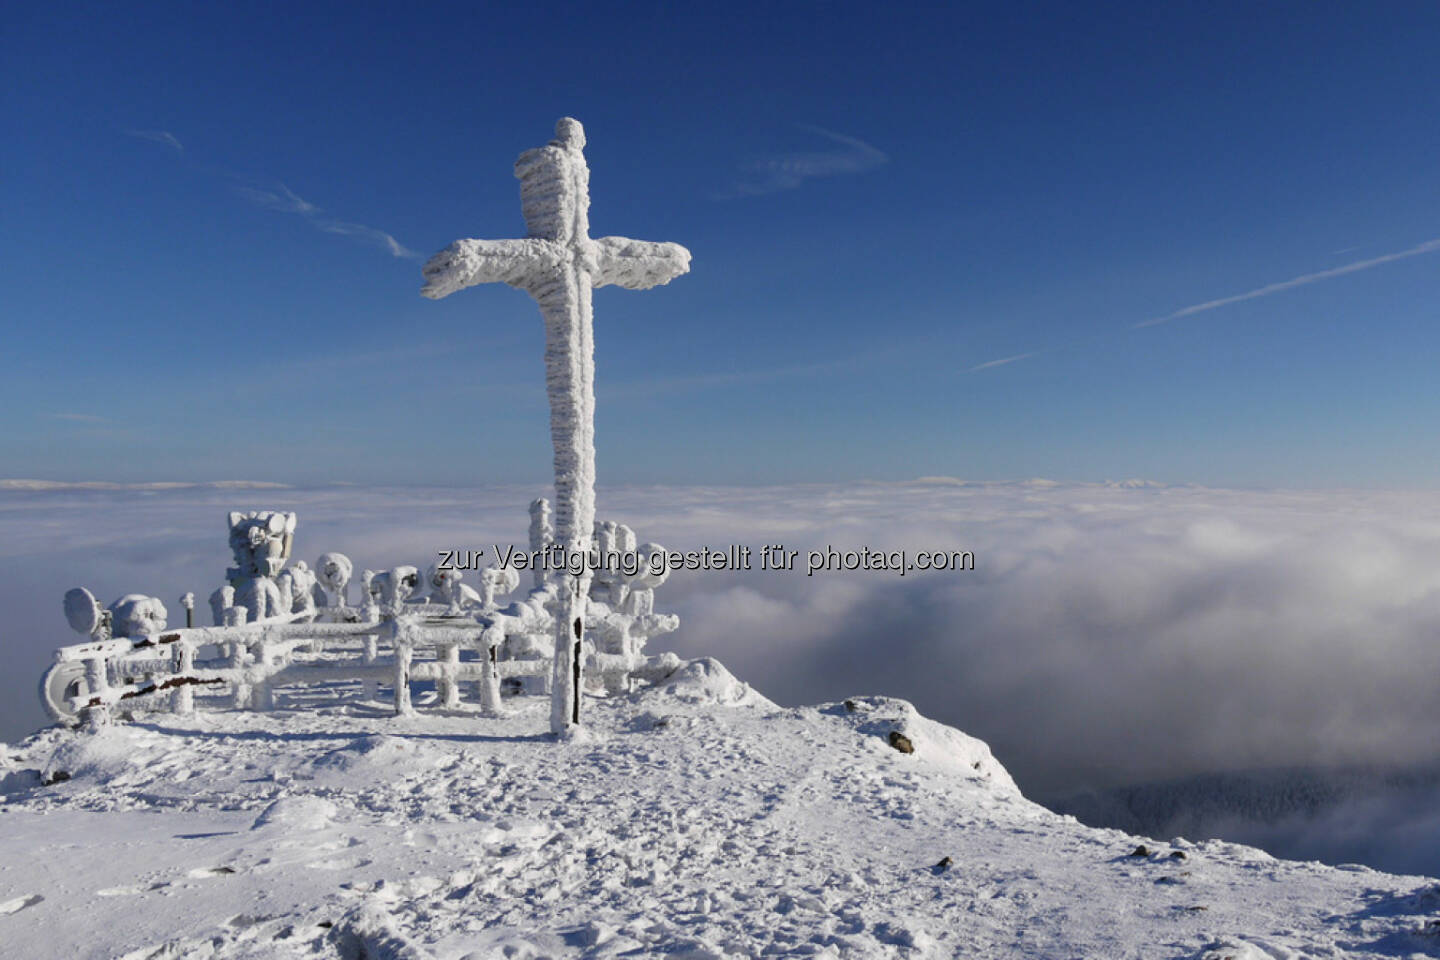 Gipfelkreuz, Berg, Schnee, top, Spitze, geschafft, erreicht, Ziel, http://www.shutterstock.com/de/pic-167627510/stock-photo-cross-on-the-top-of-the-mountain-in-winter.html